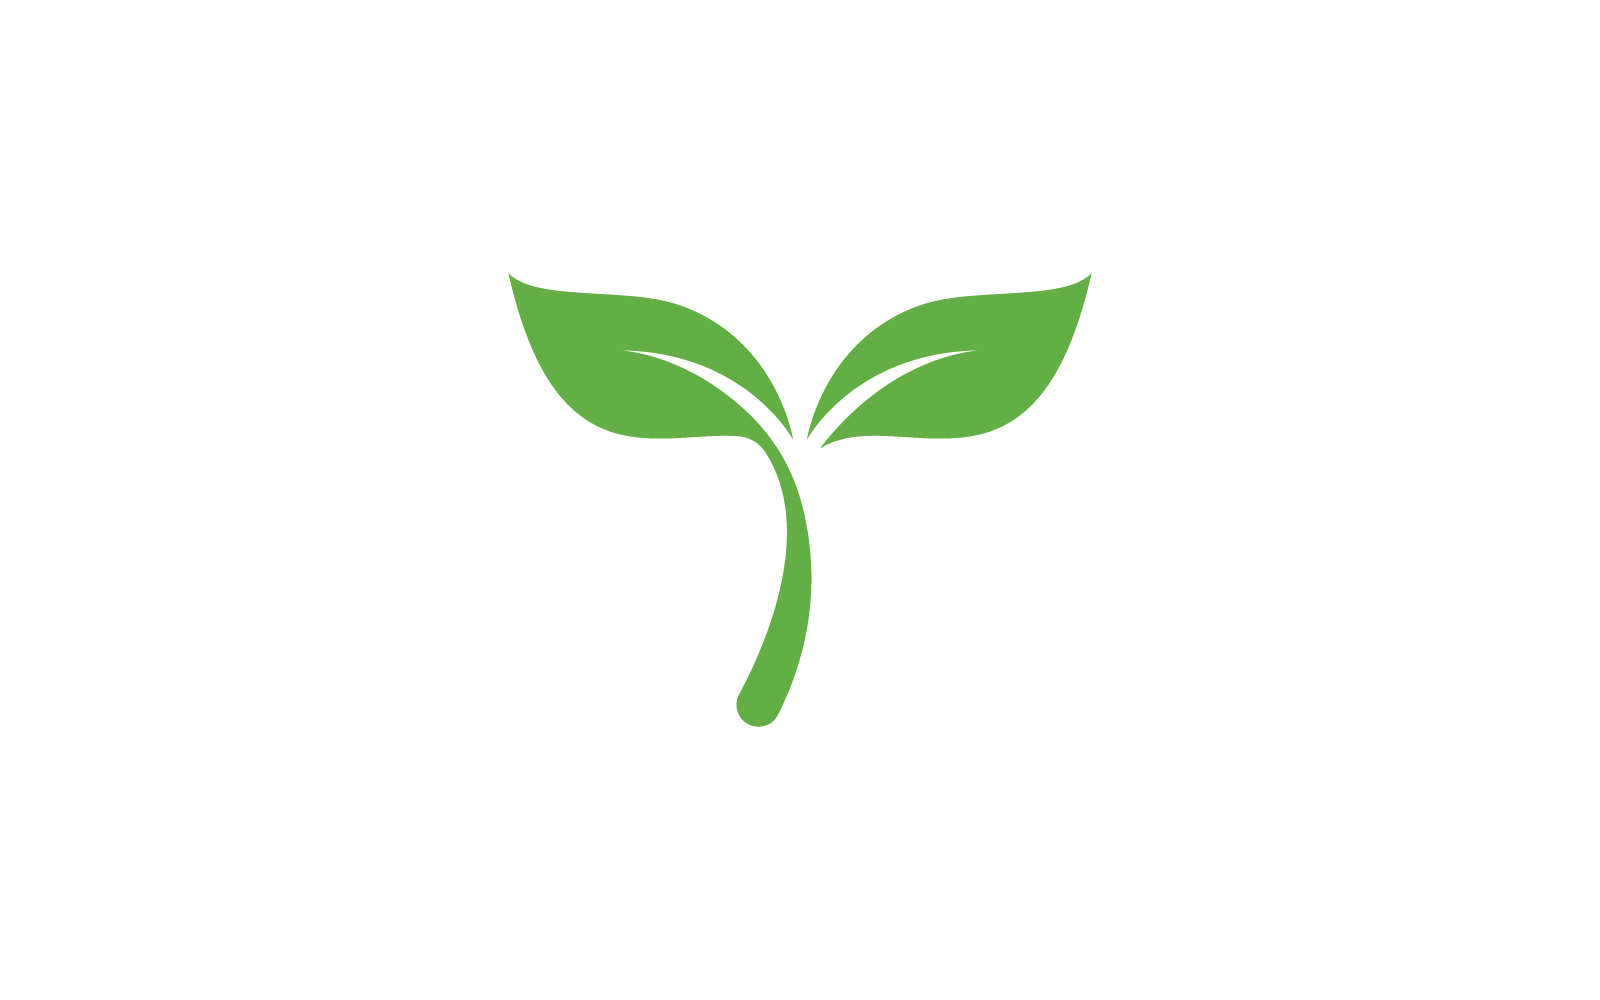 Green leaf nature flat design illustration template